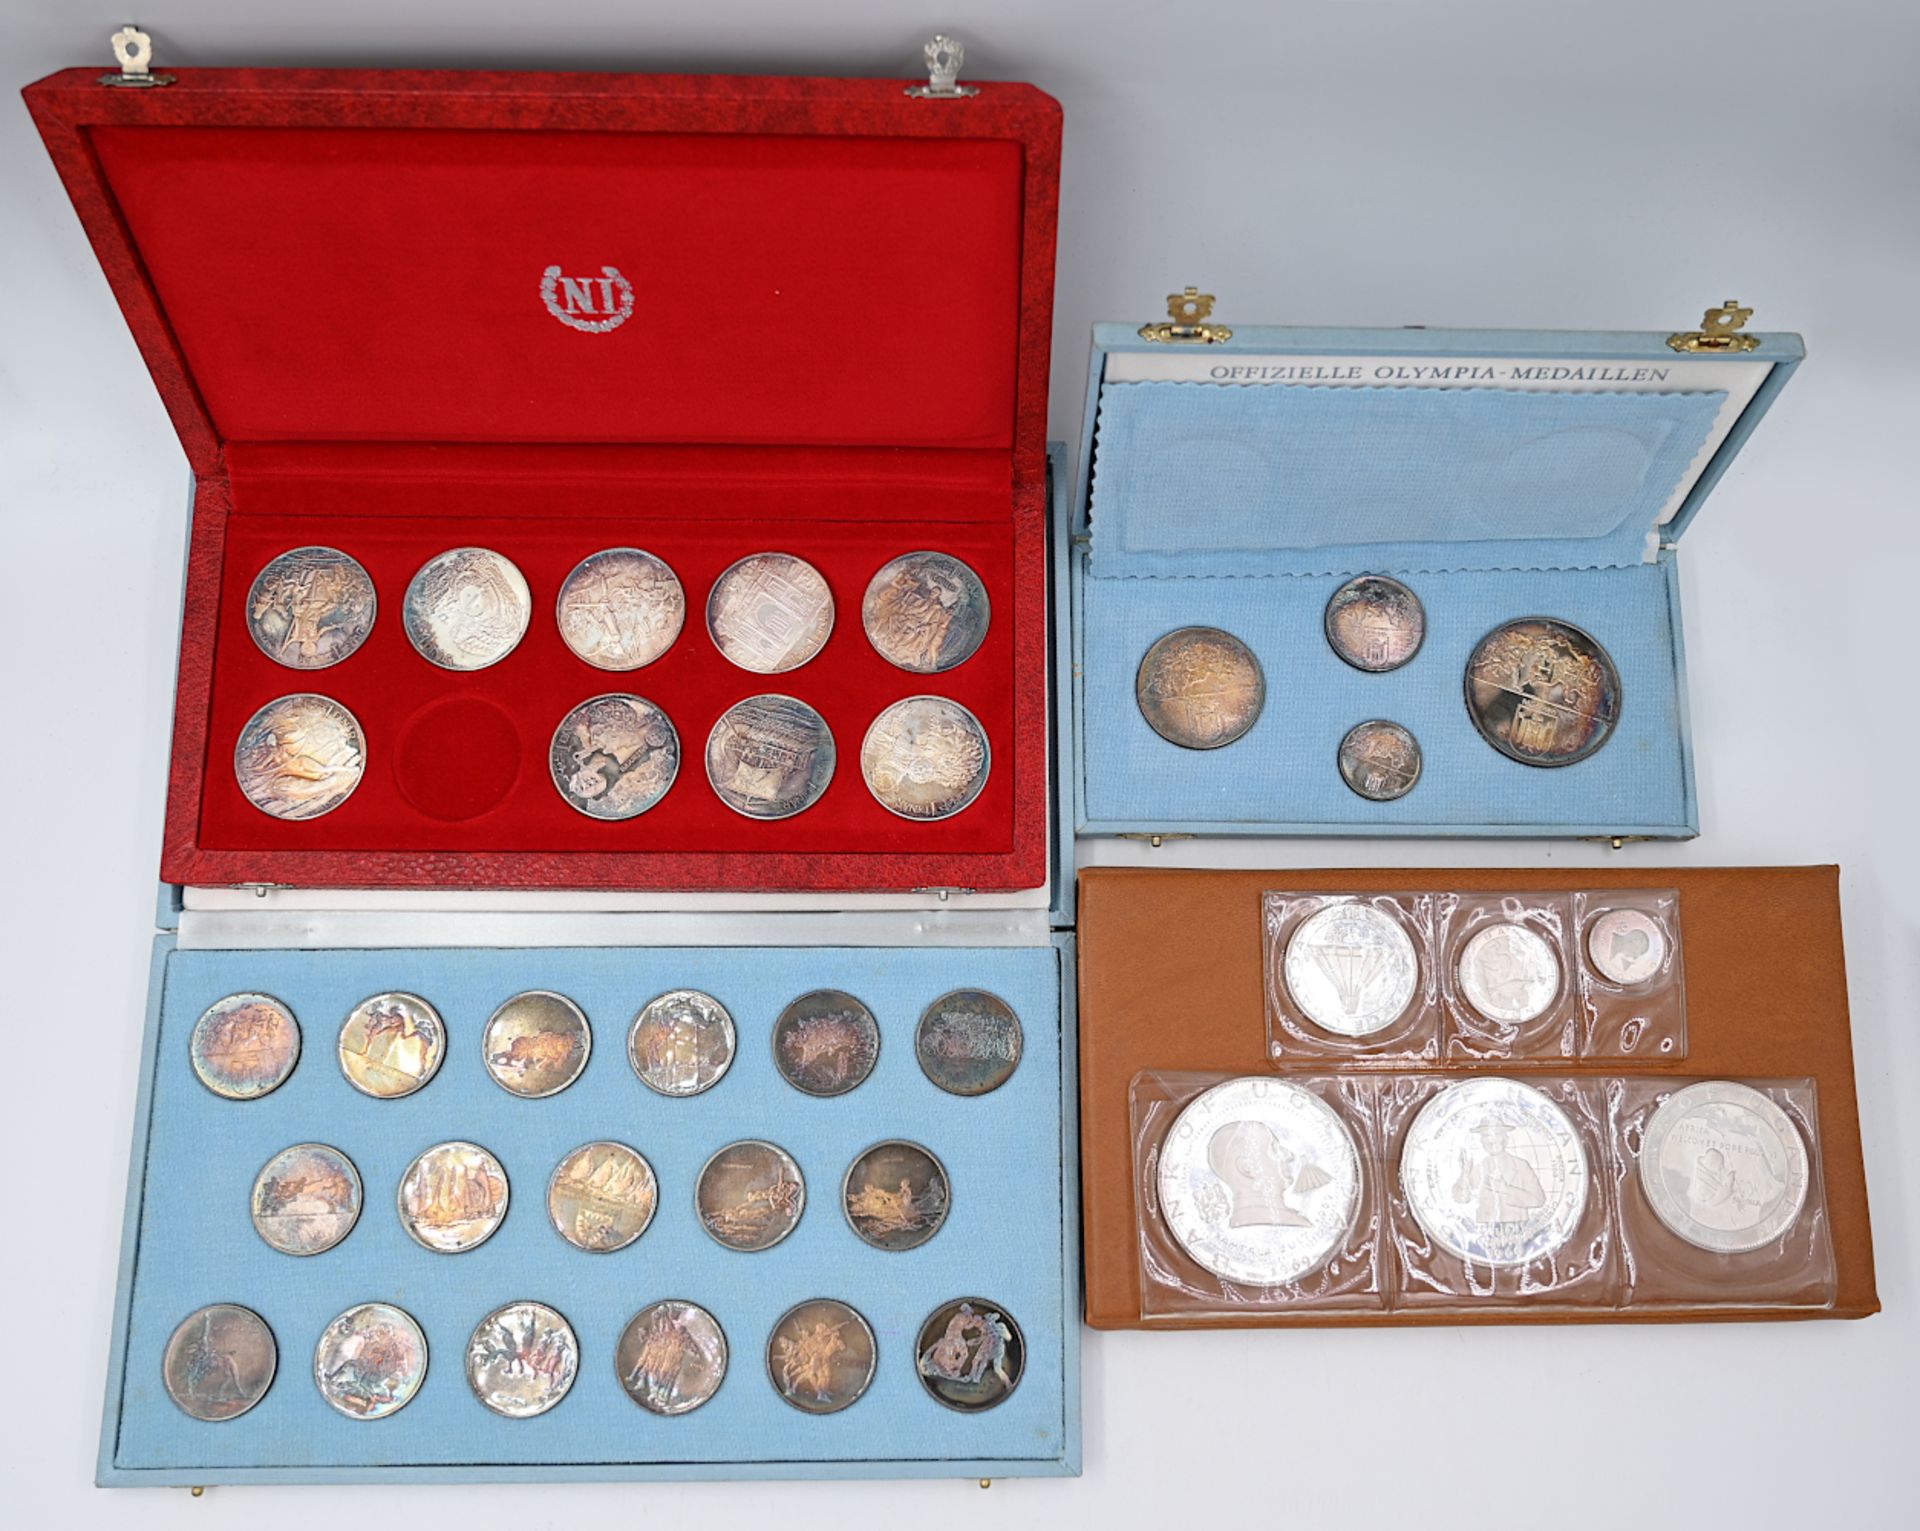 1 Goldmünze Deutsches Reich 10 Mark, 1 Goldmünze England, 1 Goldmünze Österreich 100 Cor (als Anhäng - Bild 2 aus 8